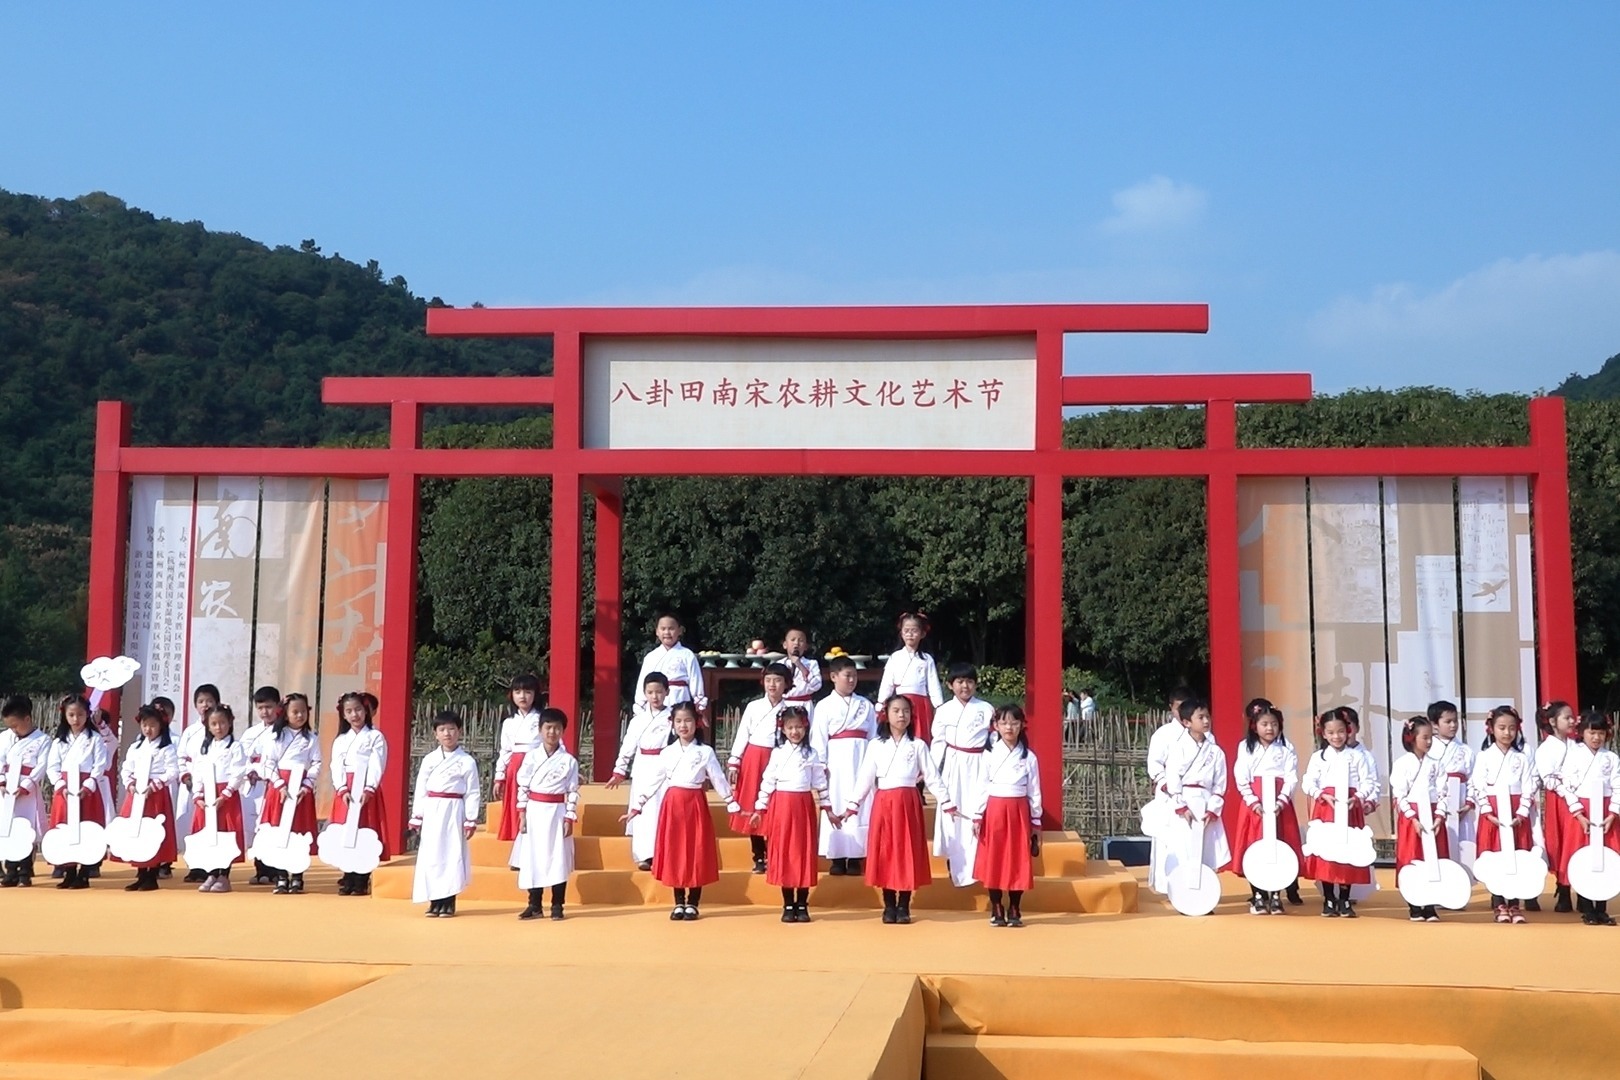 视频 | 南宋农耕文化艺术节在杭州八卦田遗址公园开幕